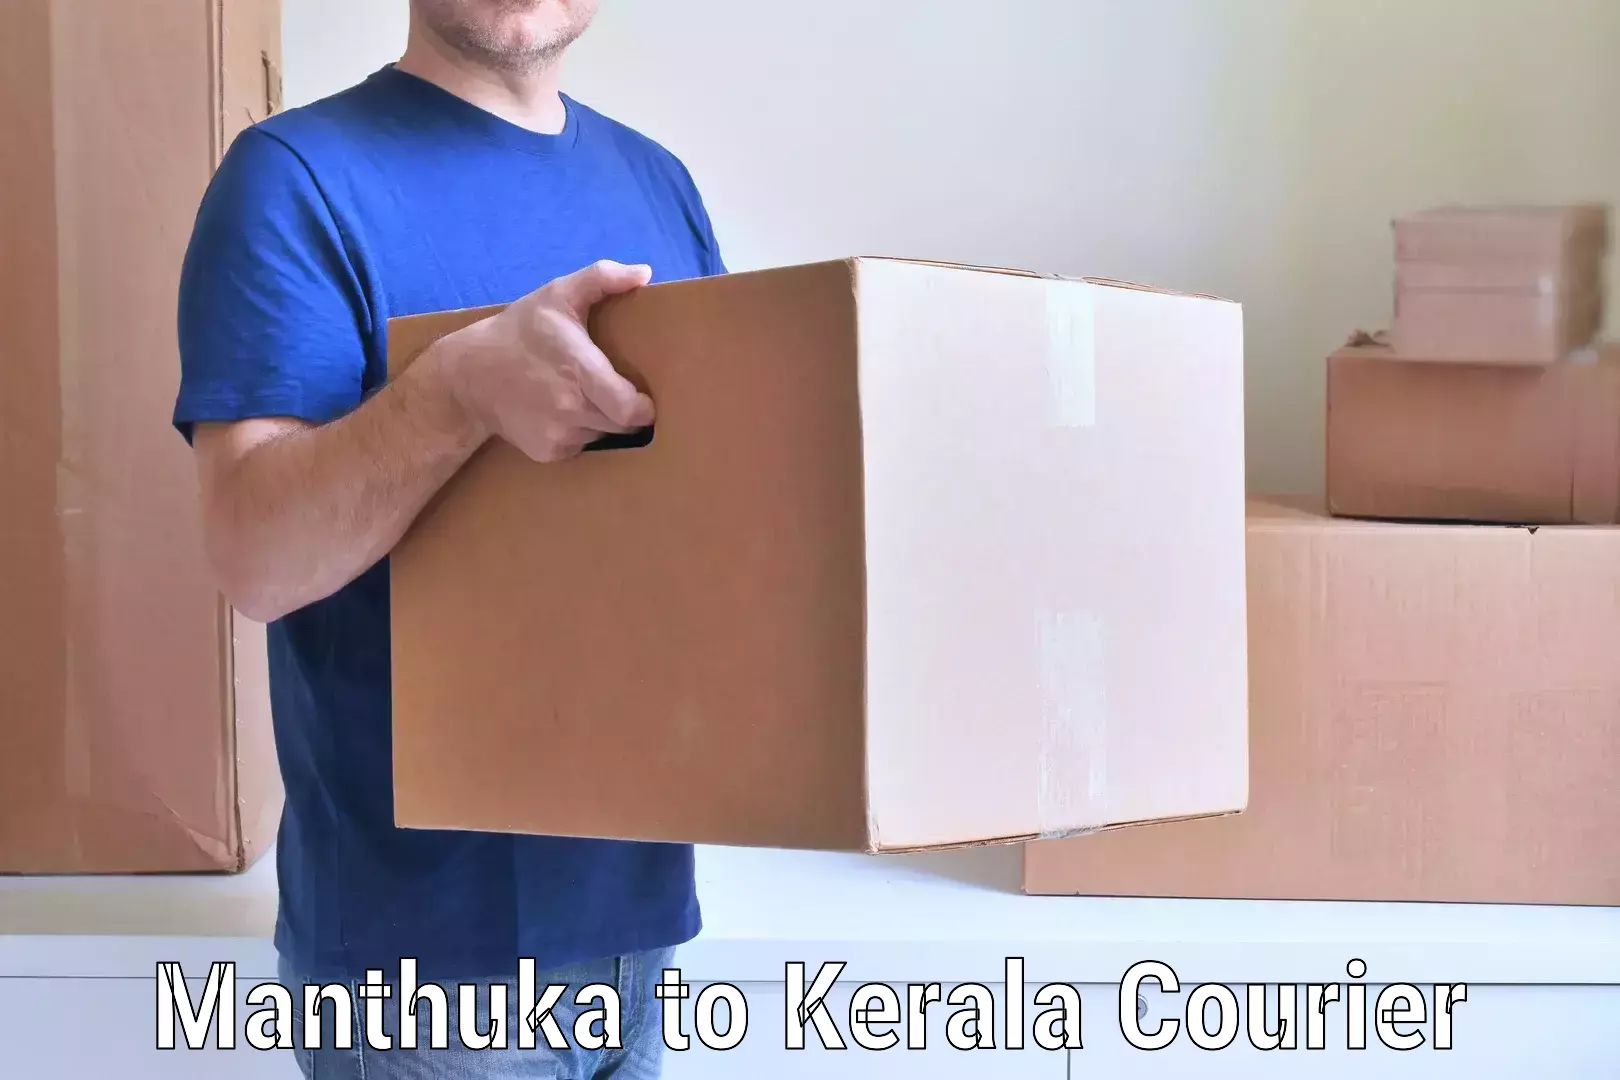 Easy furniture transport Manthuka to Kerala